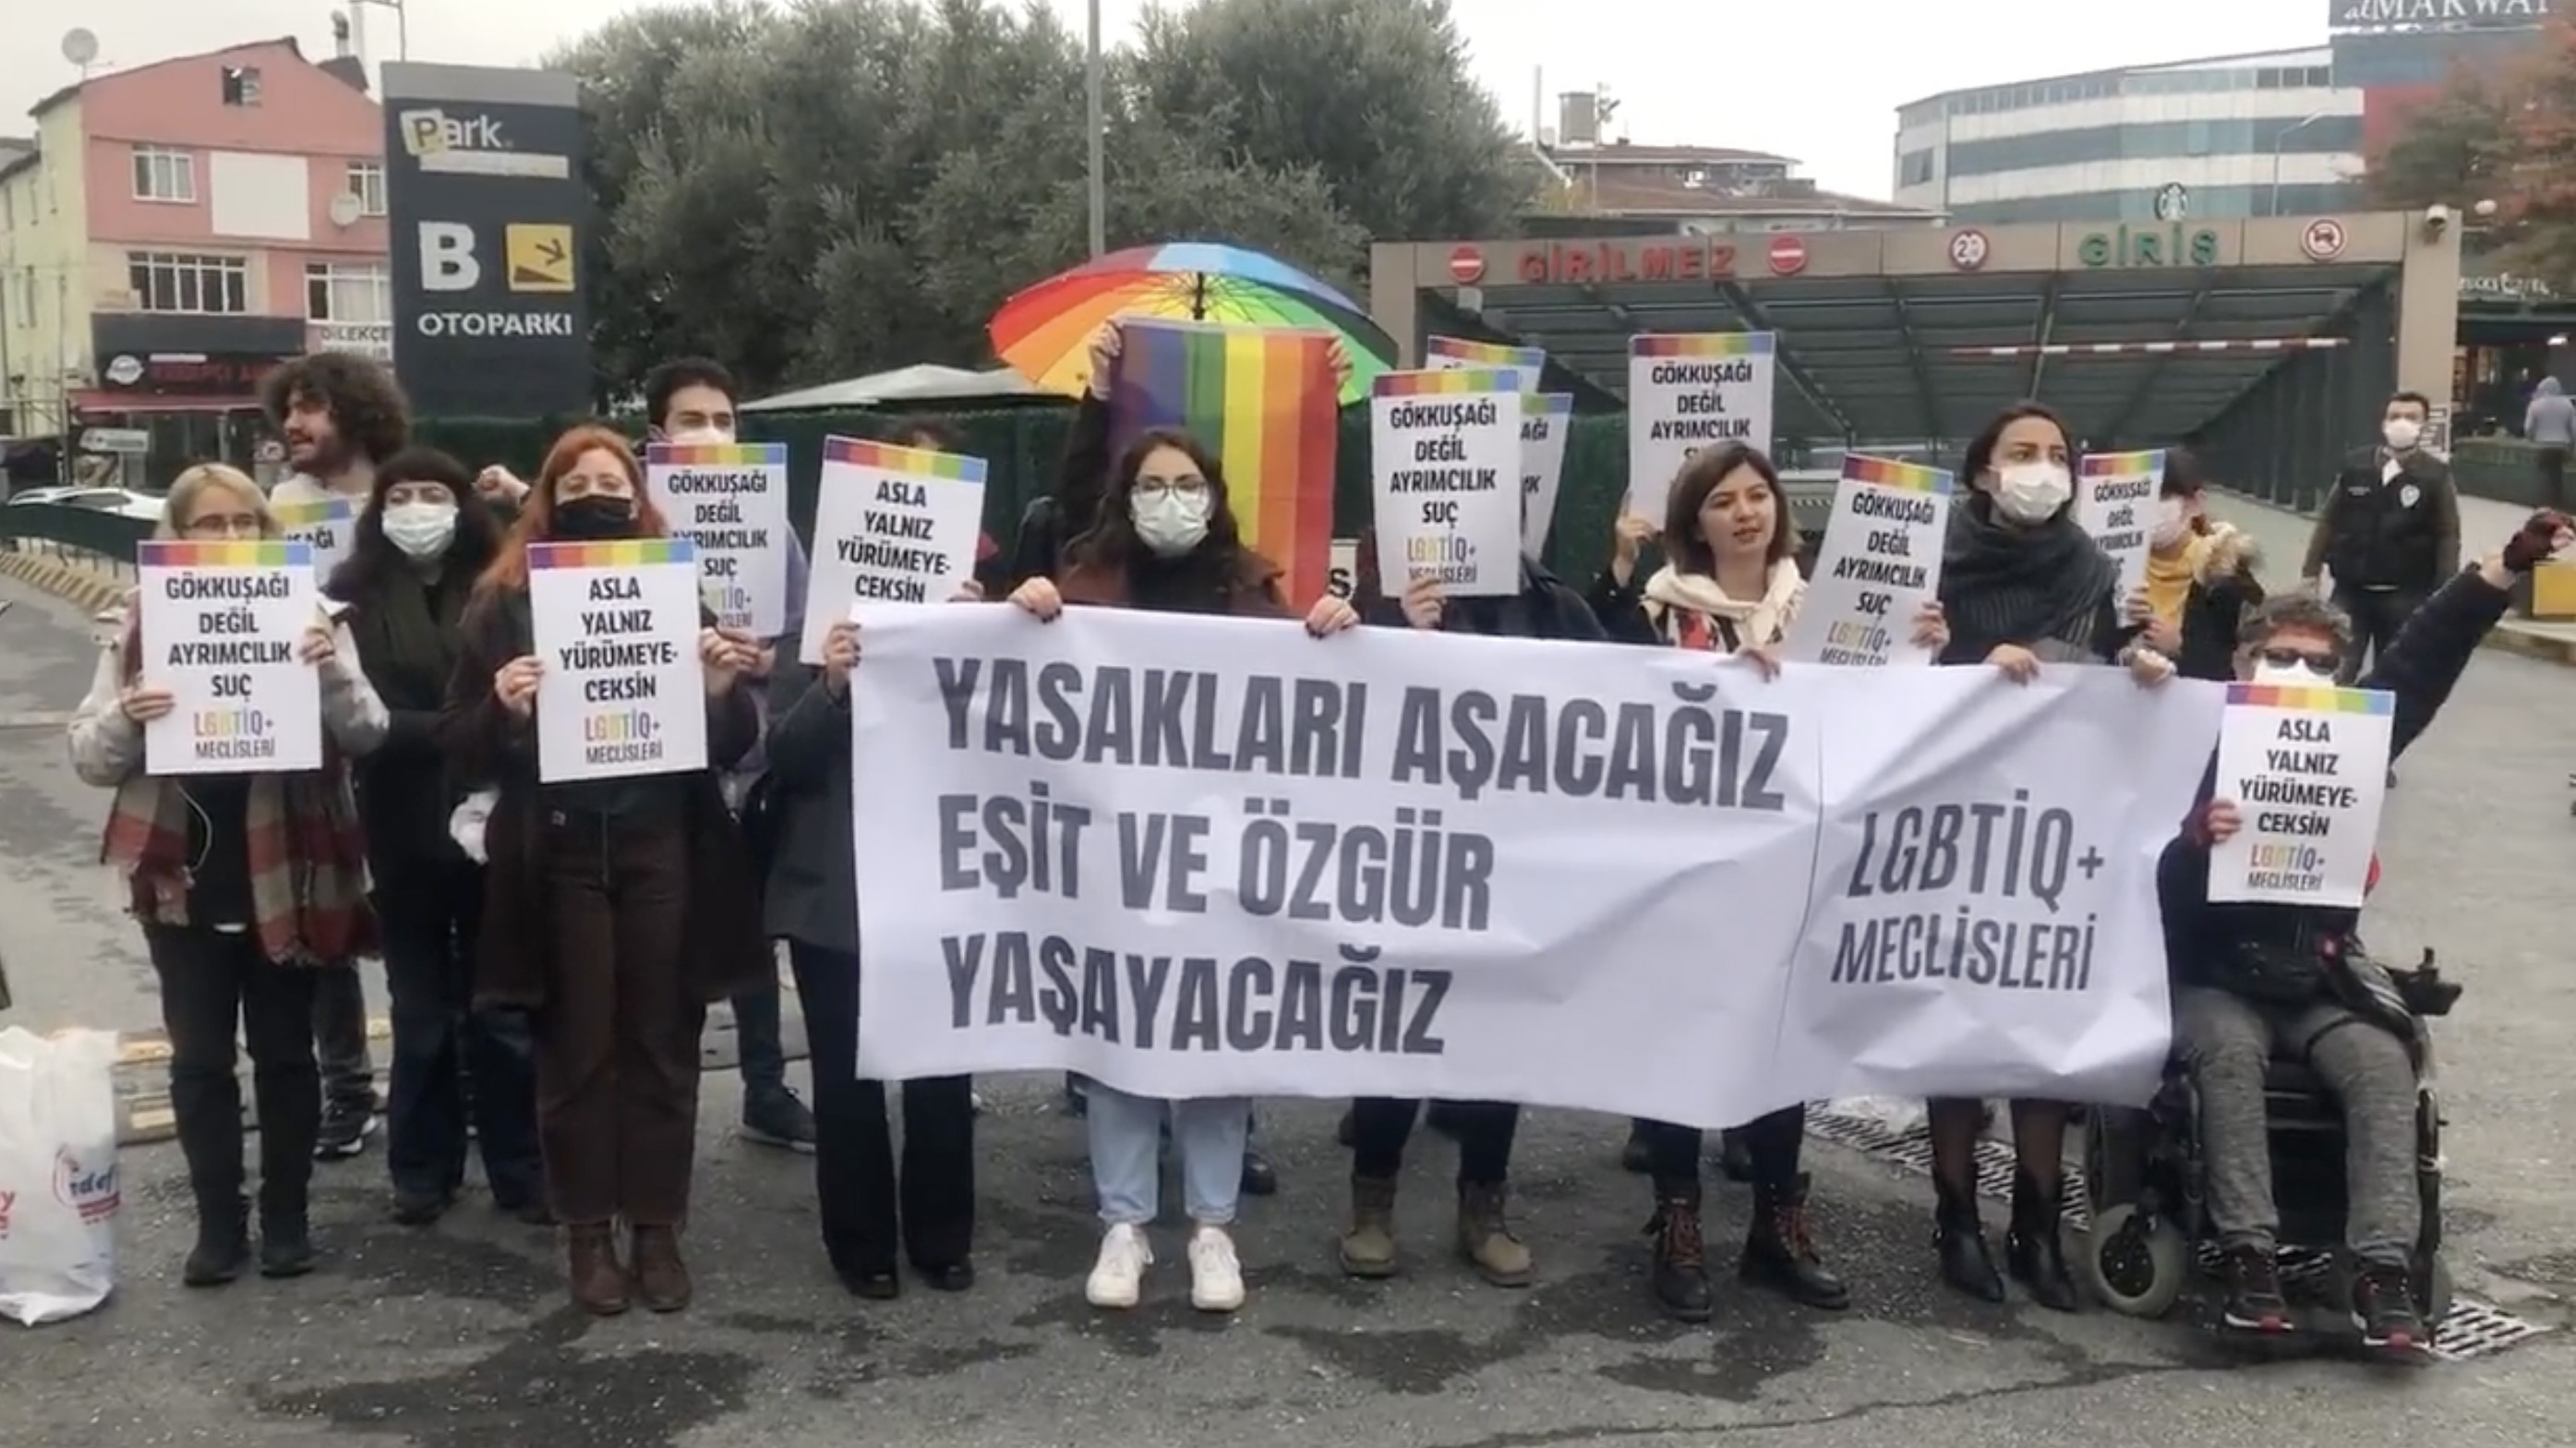 Onur Yürüyüşü LGBTİQ+ Meclisleri davasında beraat! | Kaos GL - LGBTİ+ Haber Portalı